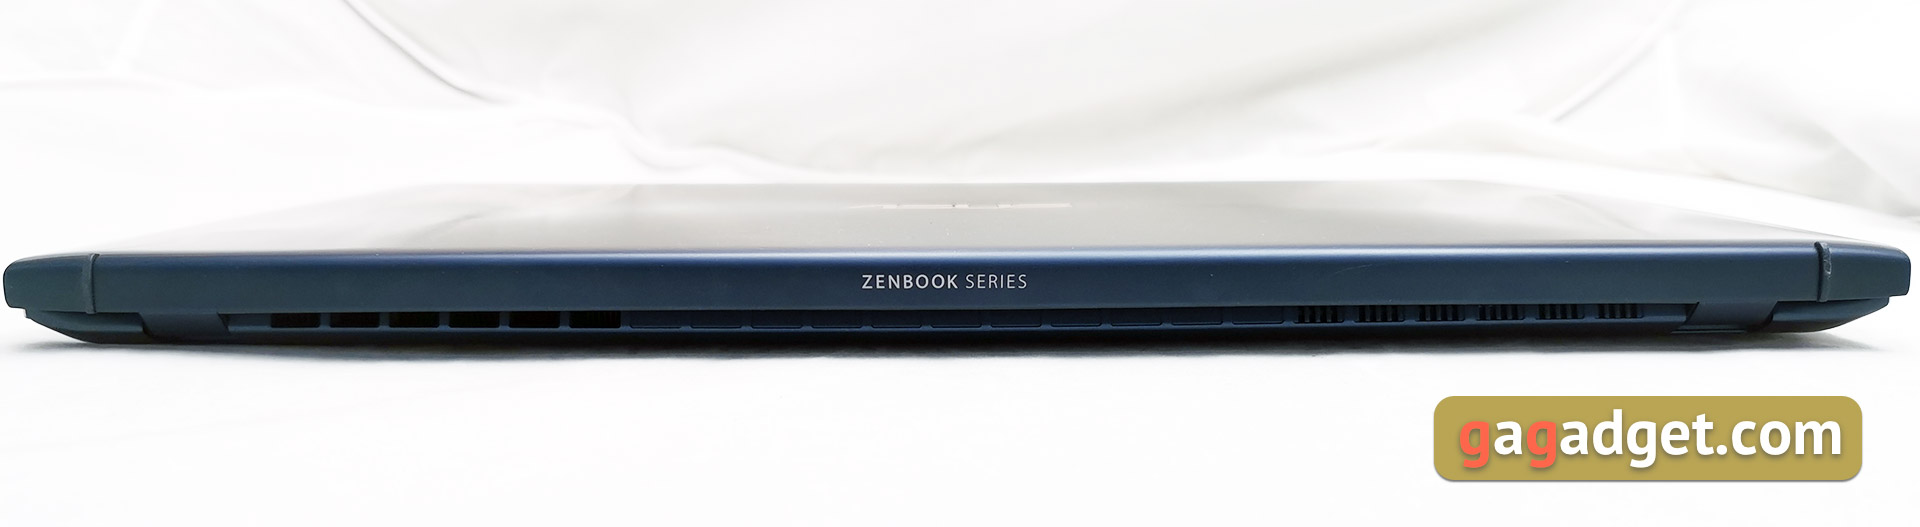 Przegląd ASUS Zenbook UX534FTS 15: kompaktowy notebook z GeForce GTX 1650 i Intel 10-tej generacji-14